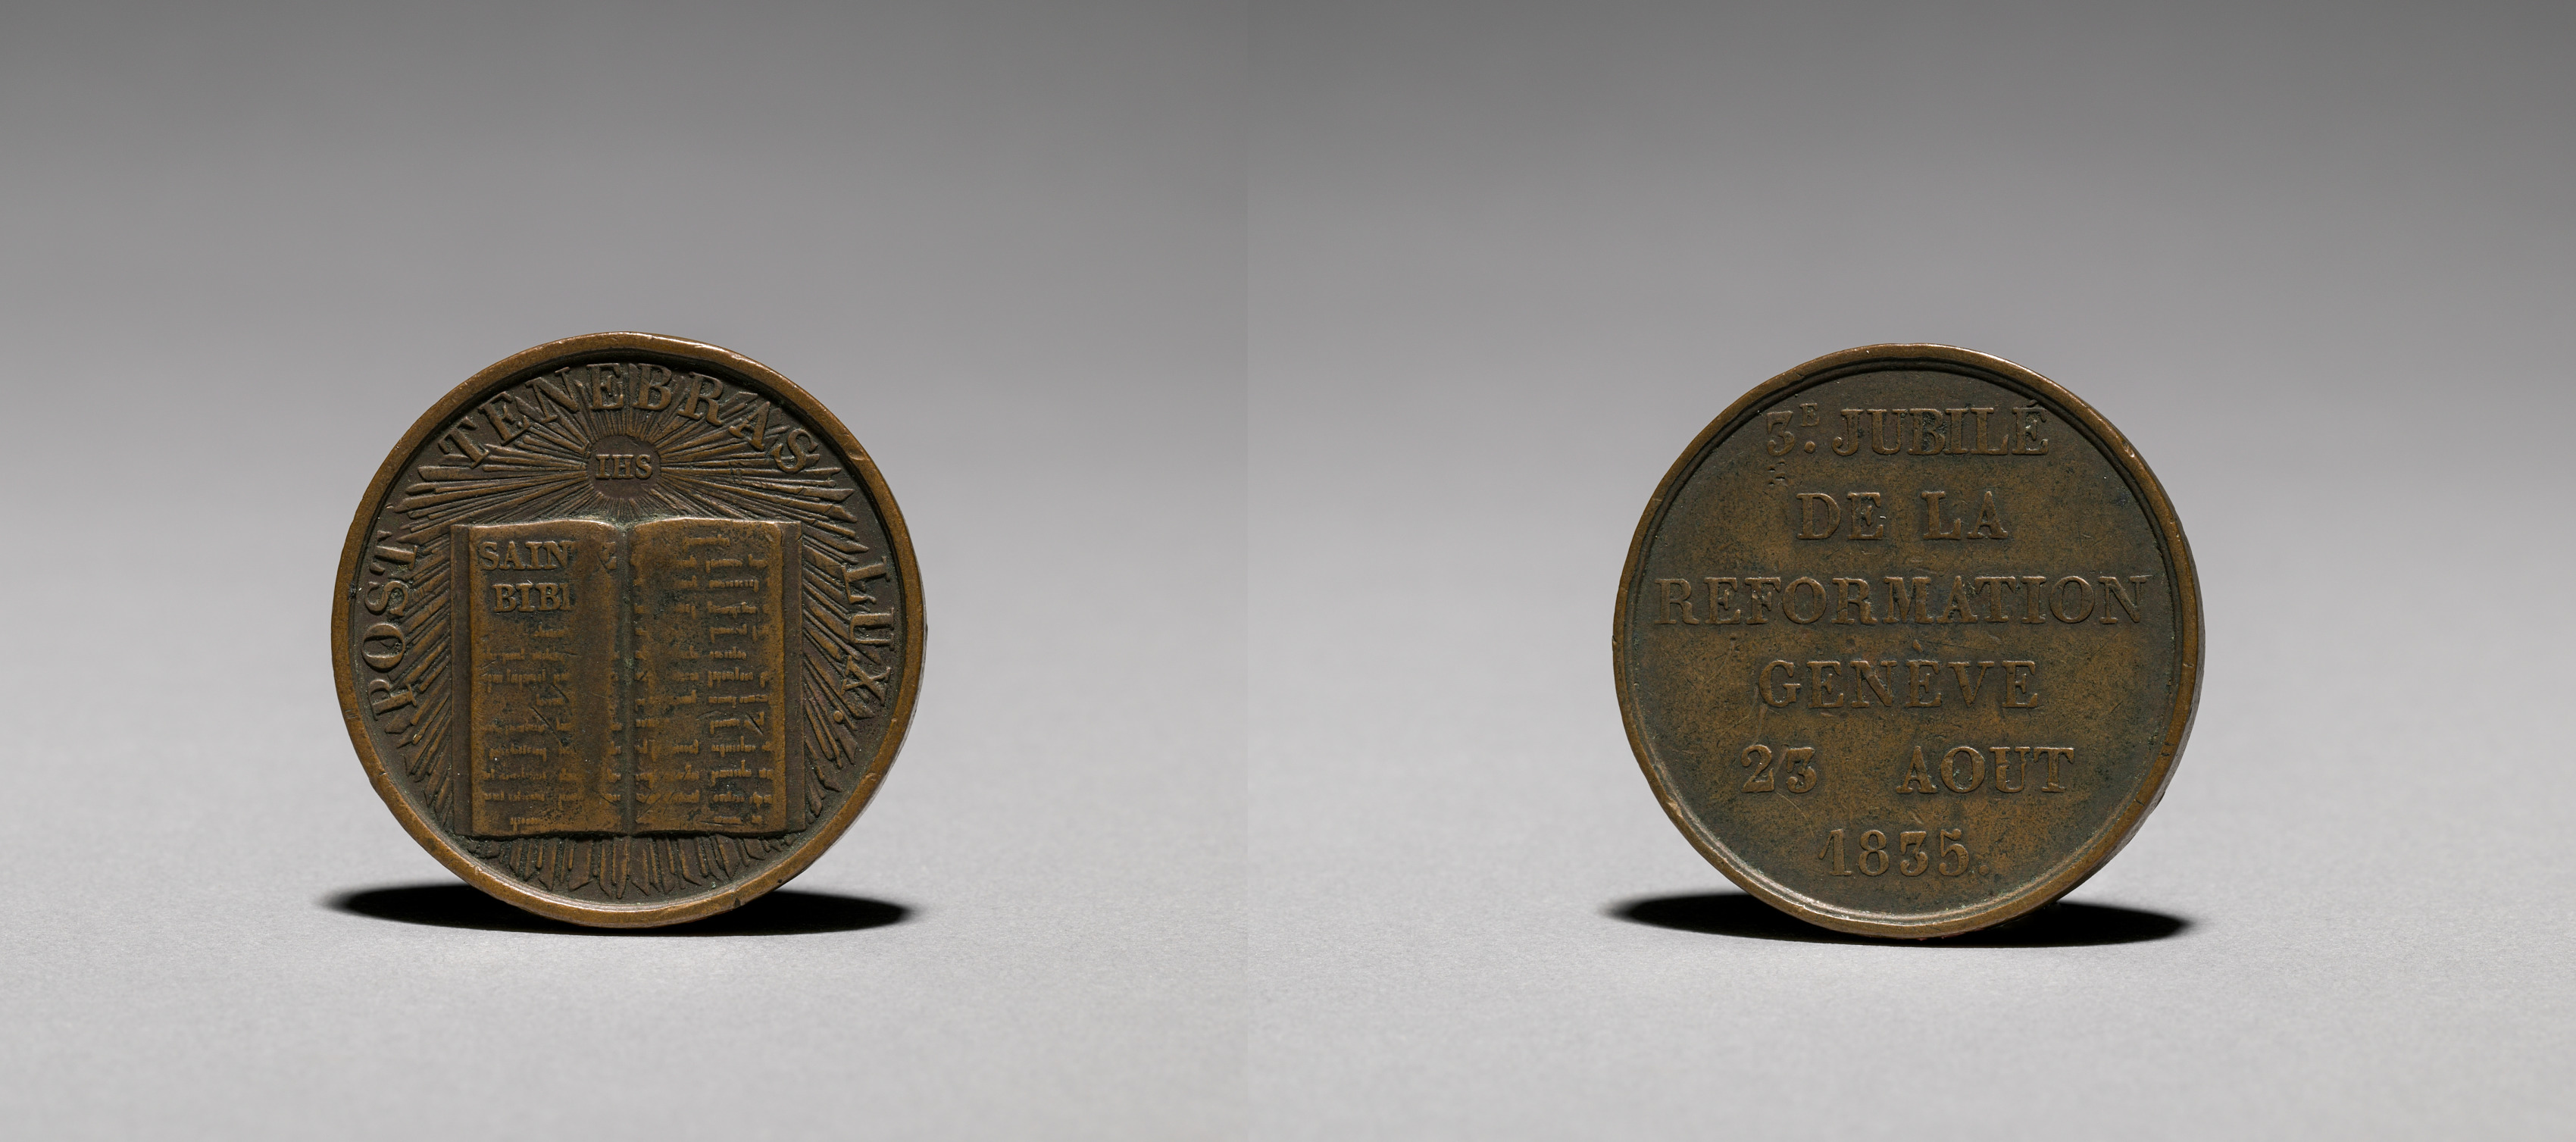 Medal: Commemorating 3c Jubilé de la Reformation Genève 23 Aôut 1835